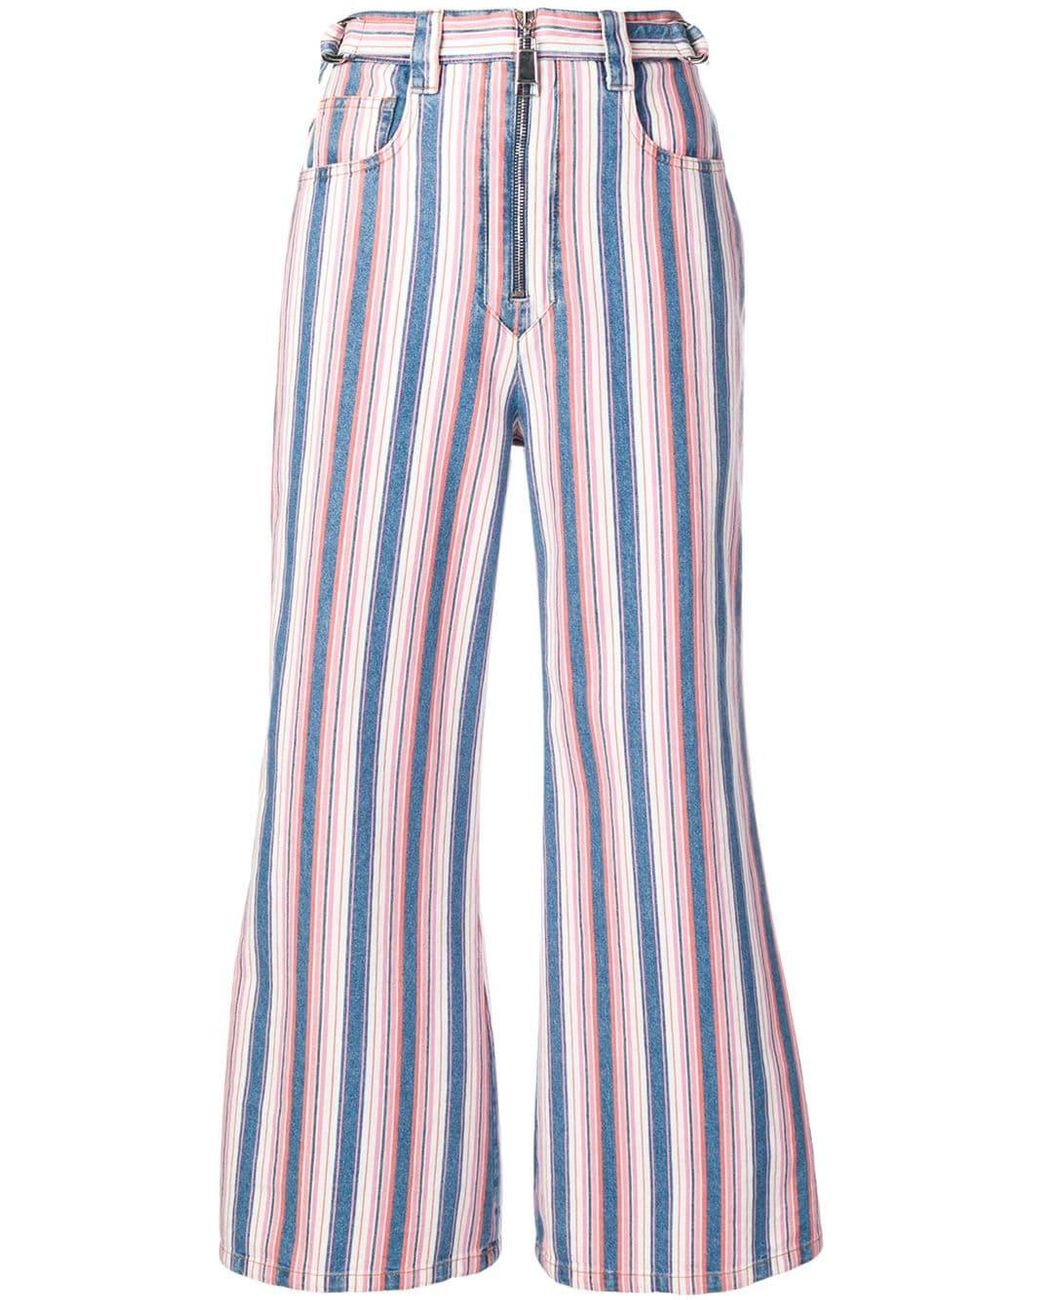 Miu Miu Denim Striped Flared Jeans in Pink - Lyst